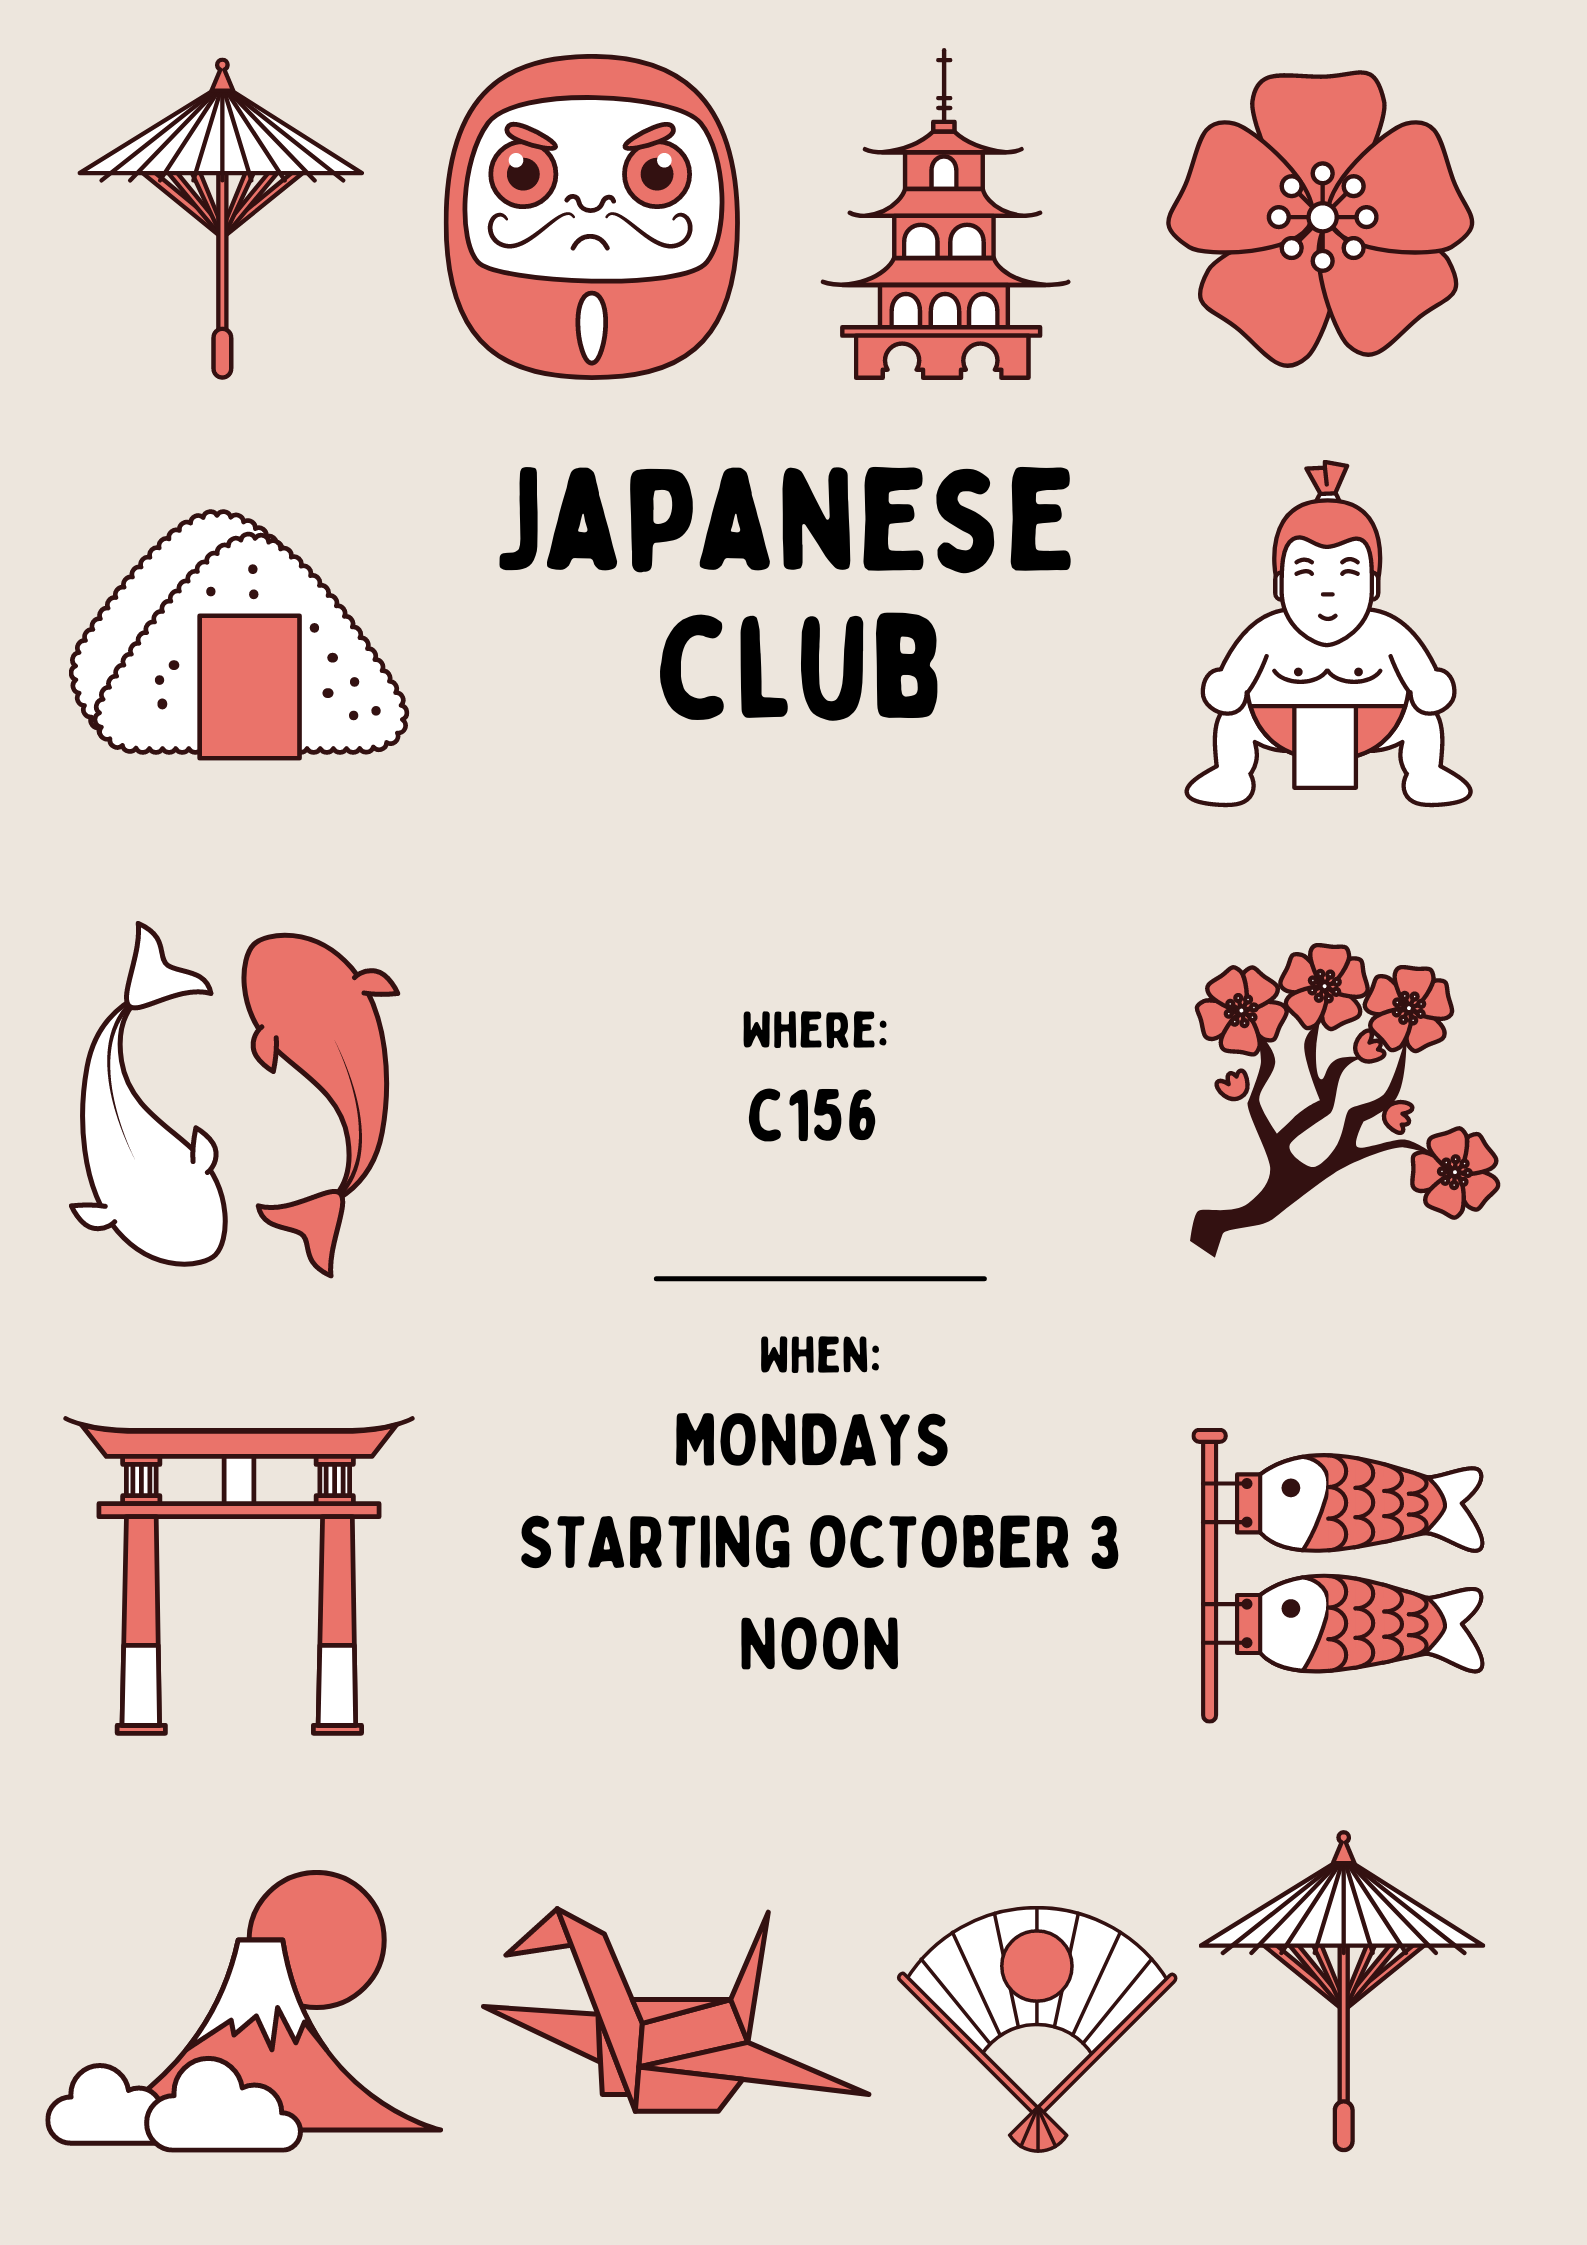 Japanese Club Meeting - UWM-Waukesha